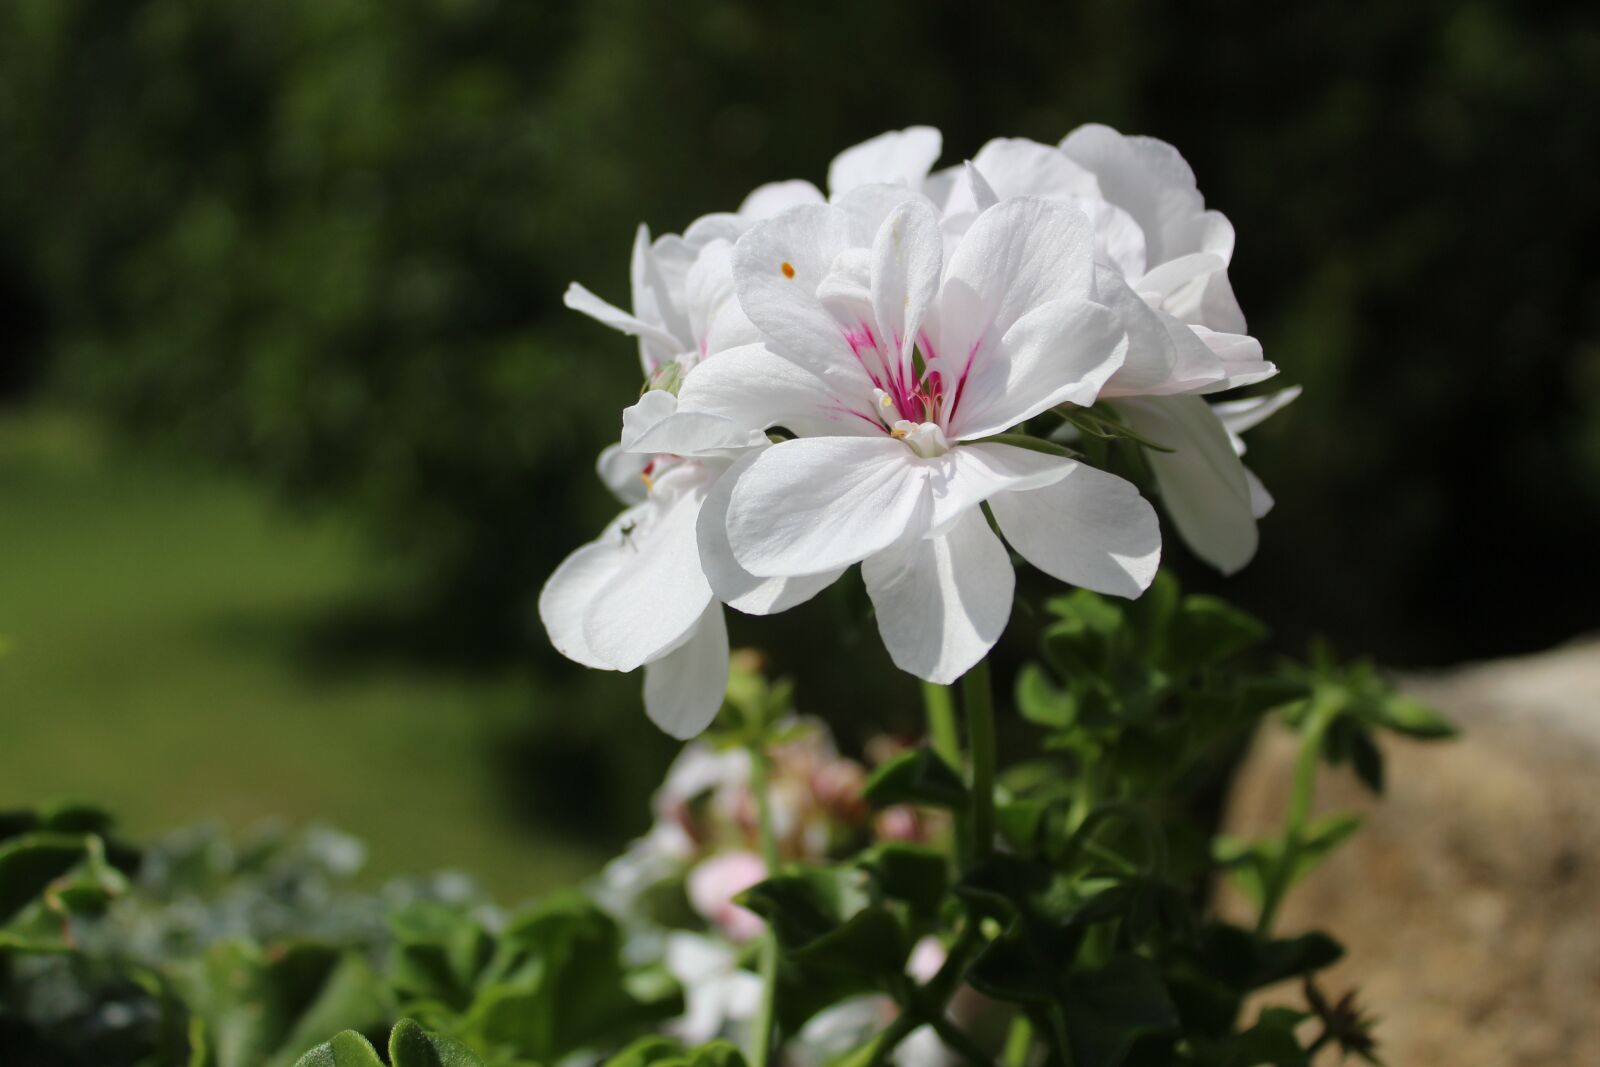 Canon EOS 1200D (EOS Rebel T5 / EOS Kiss X70 / EOS Hi) sample photo. Flower, garden, nature photography